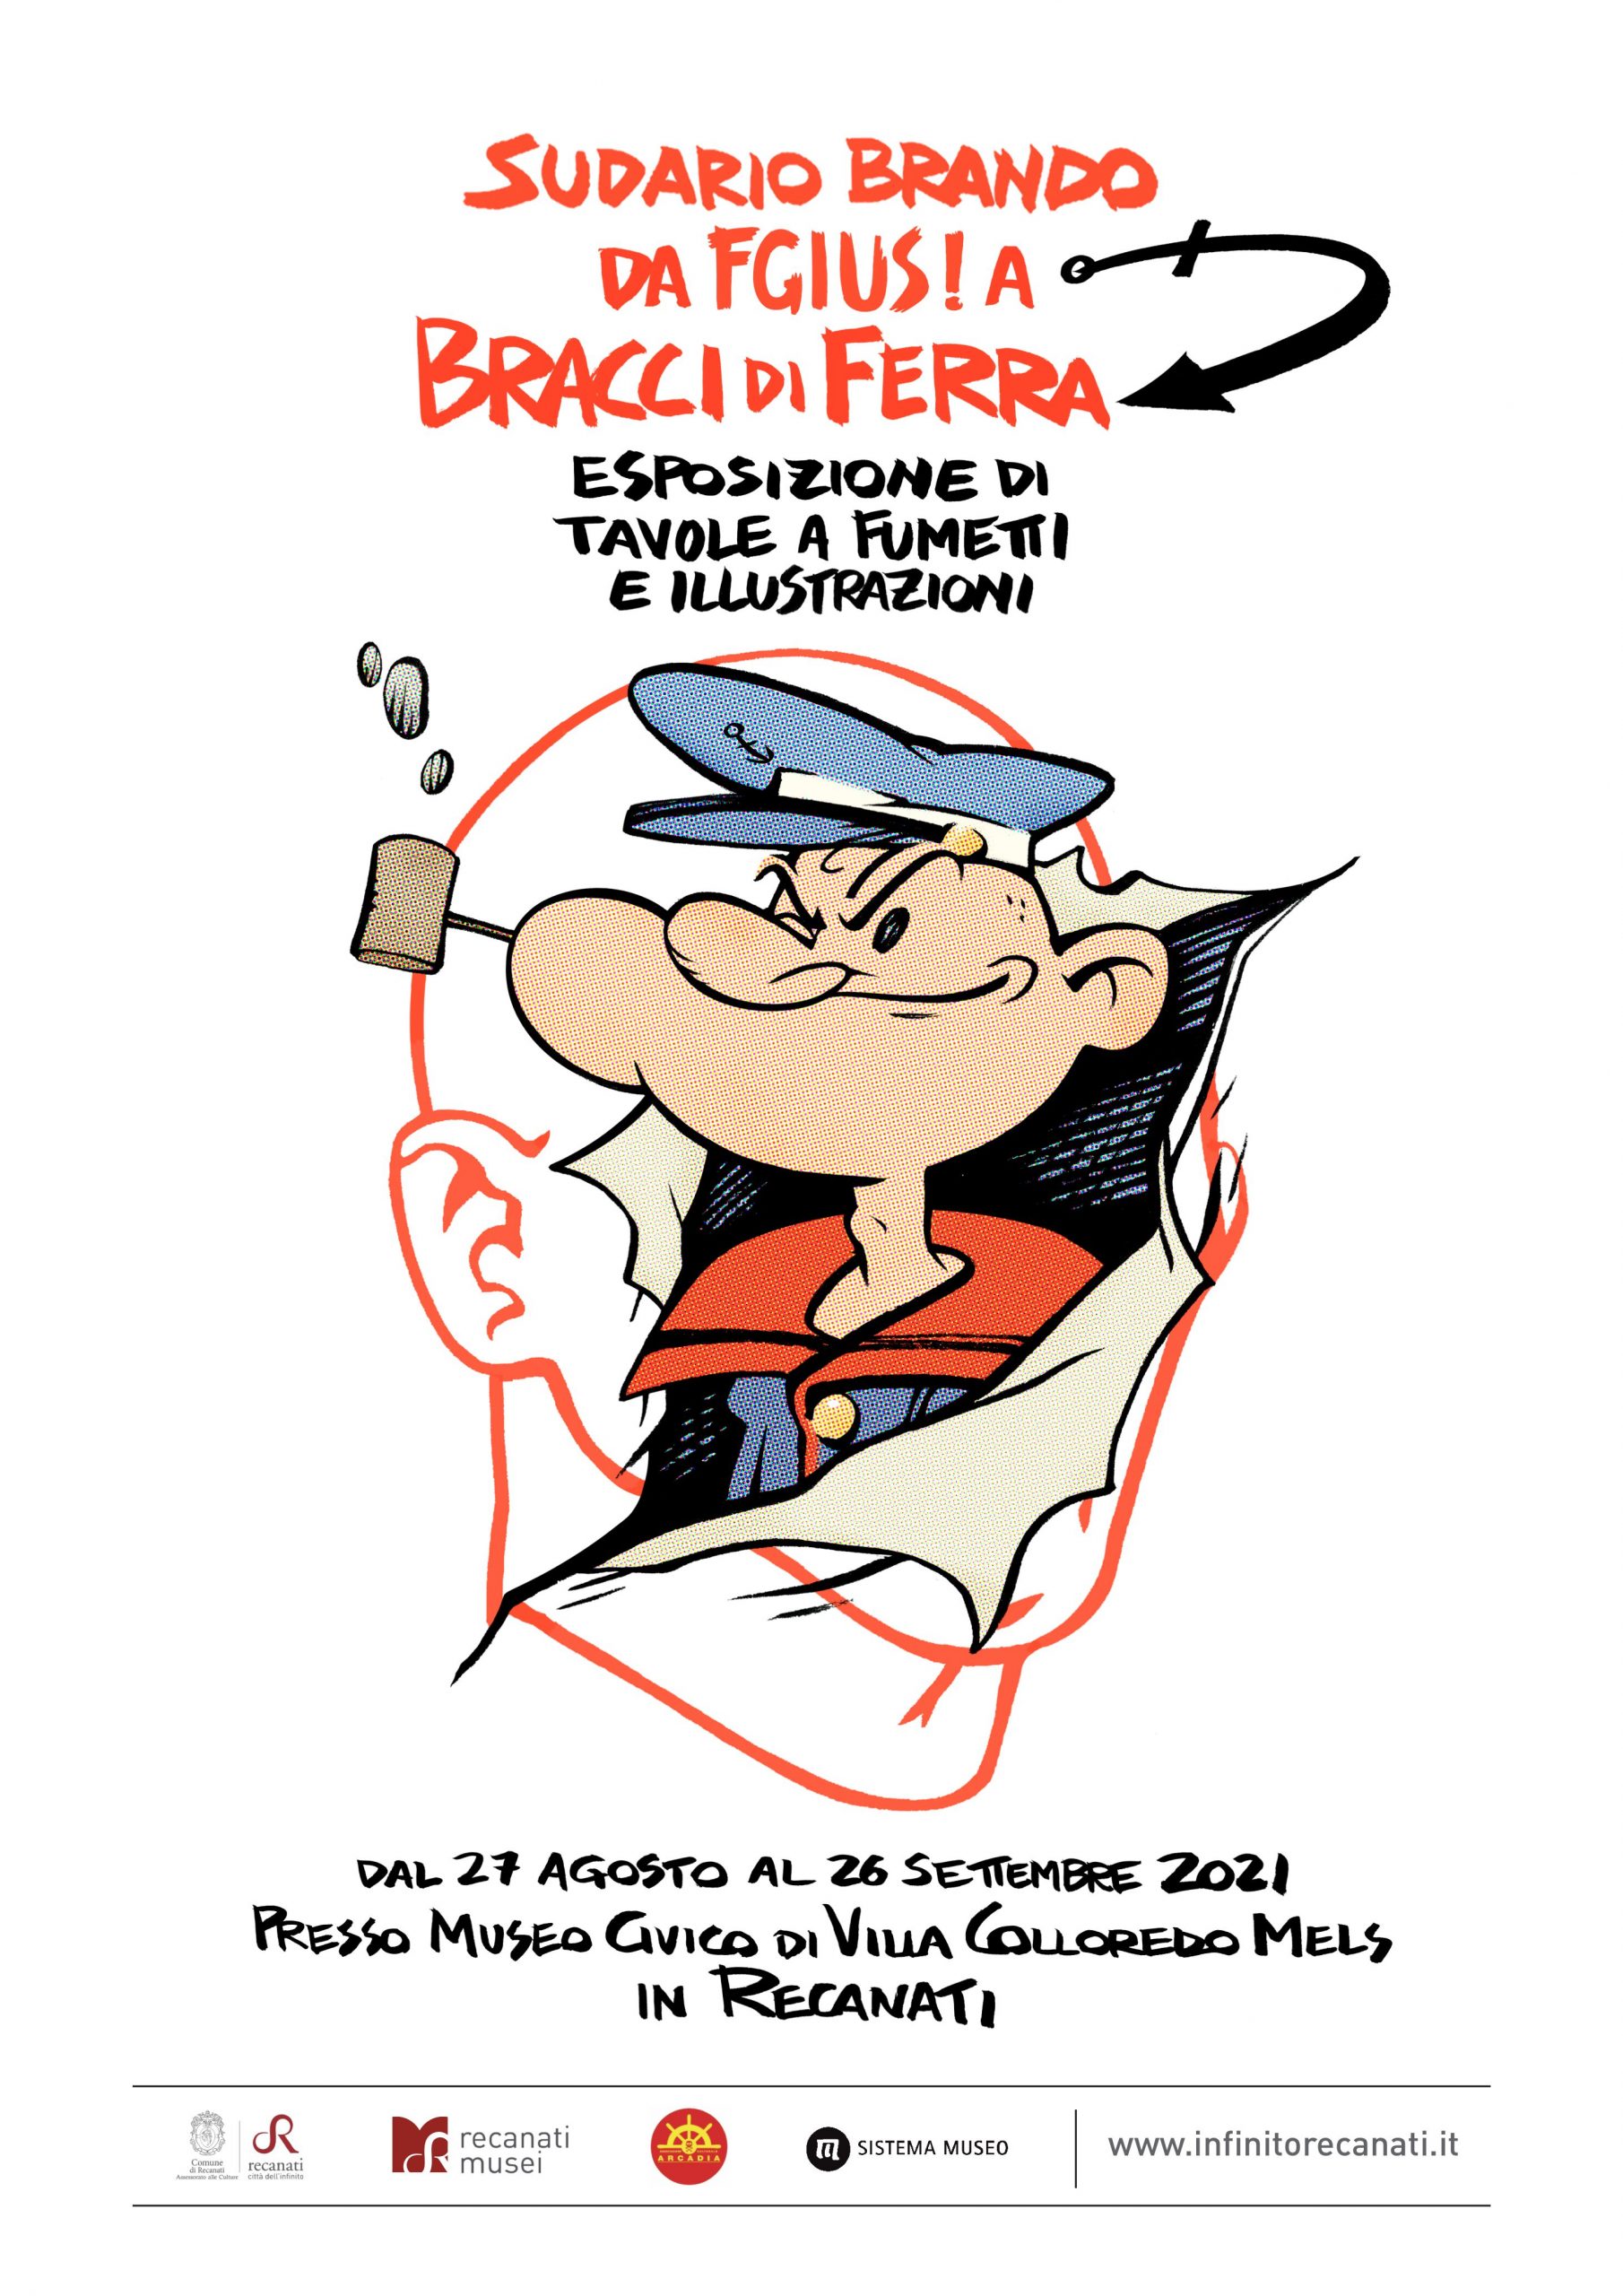 Dal 27 agosto a Villa Colloredo spazio al fumetto, con la mostra di Sudario Brando